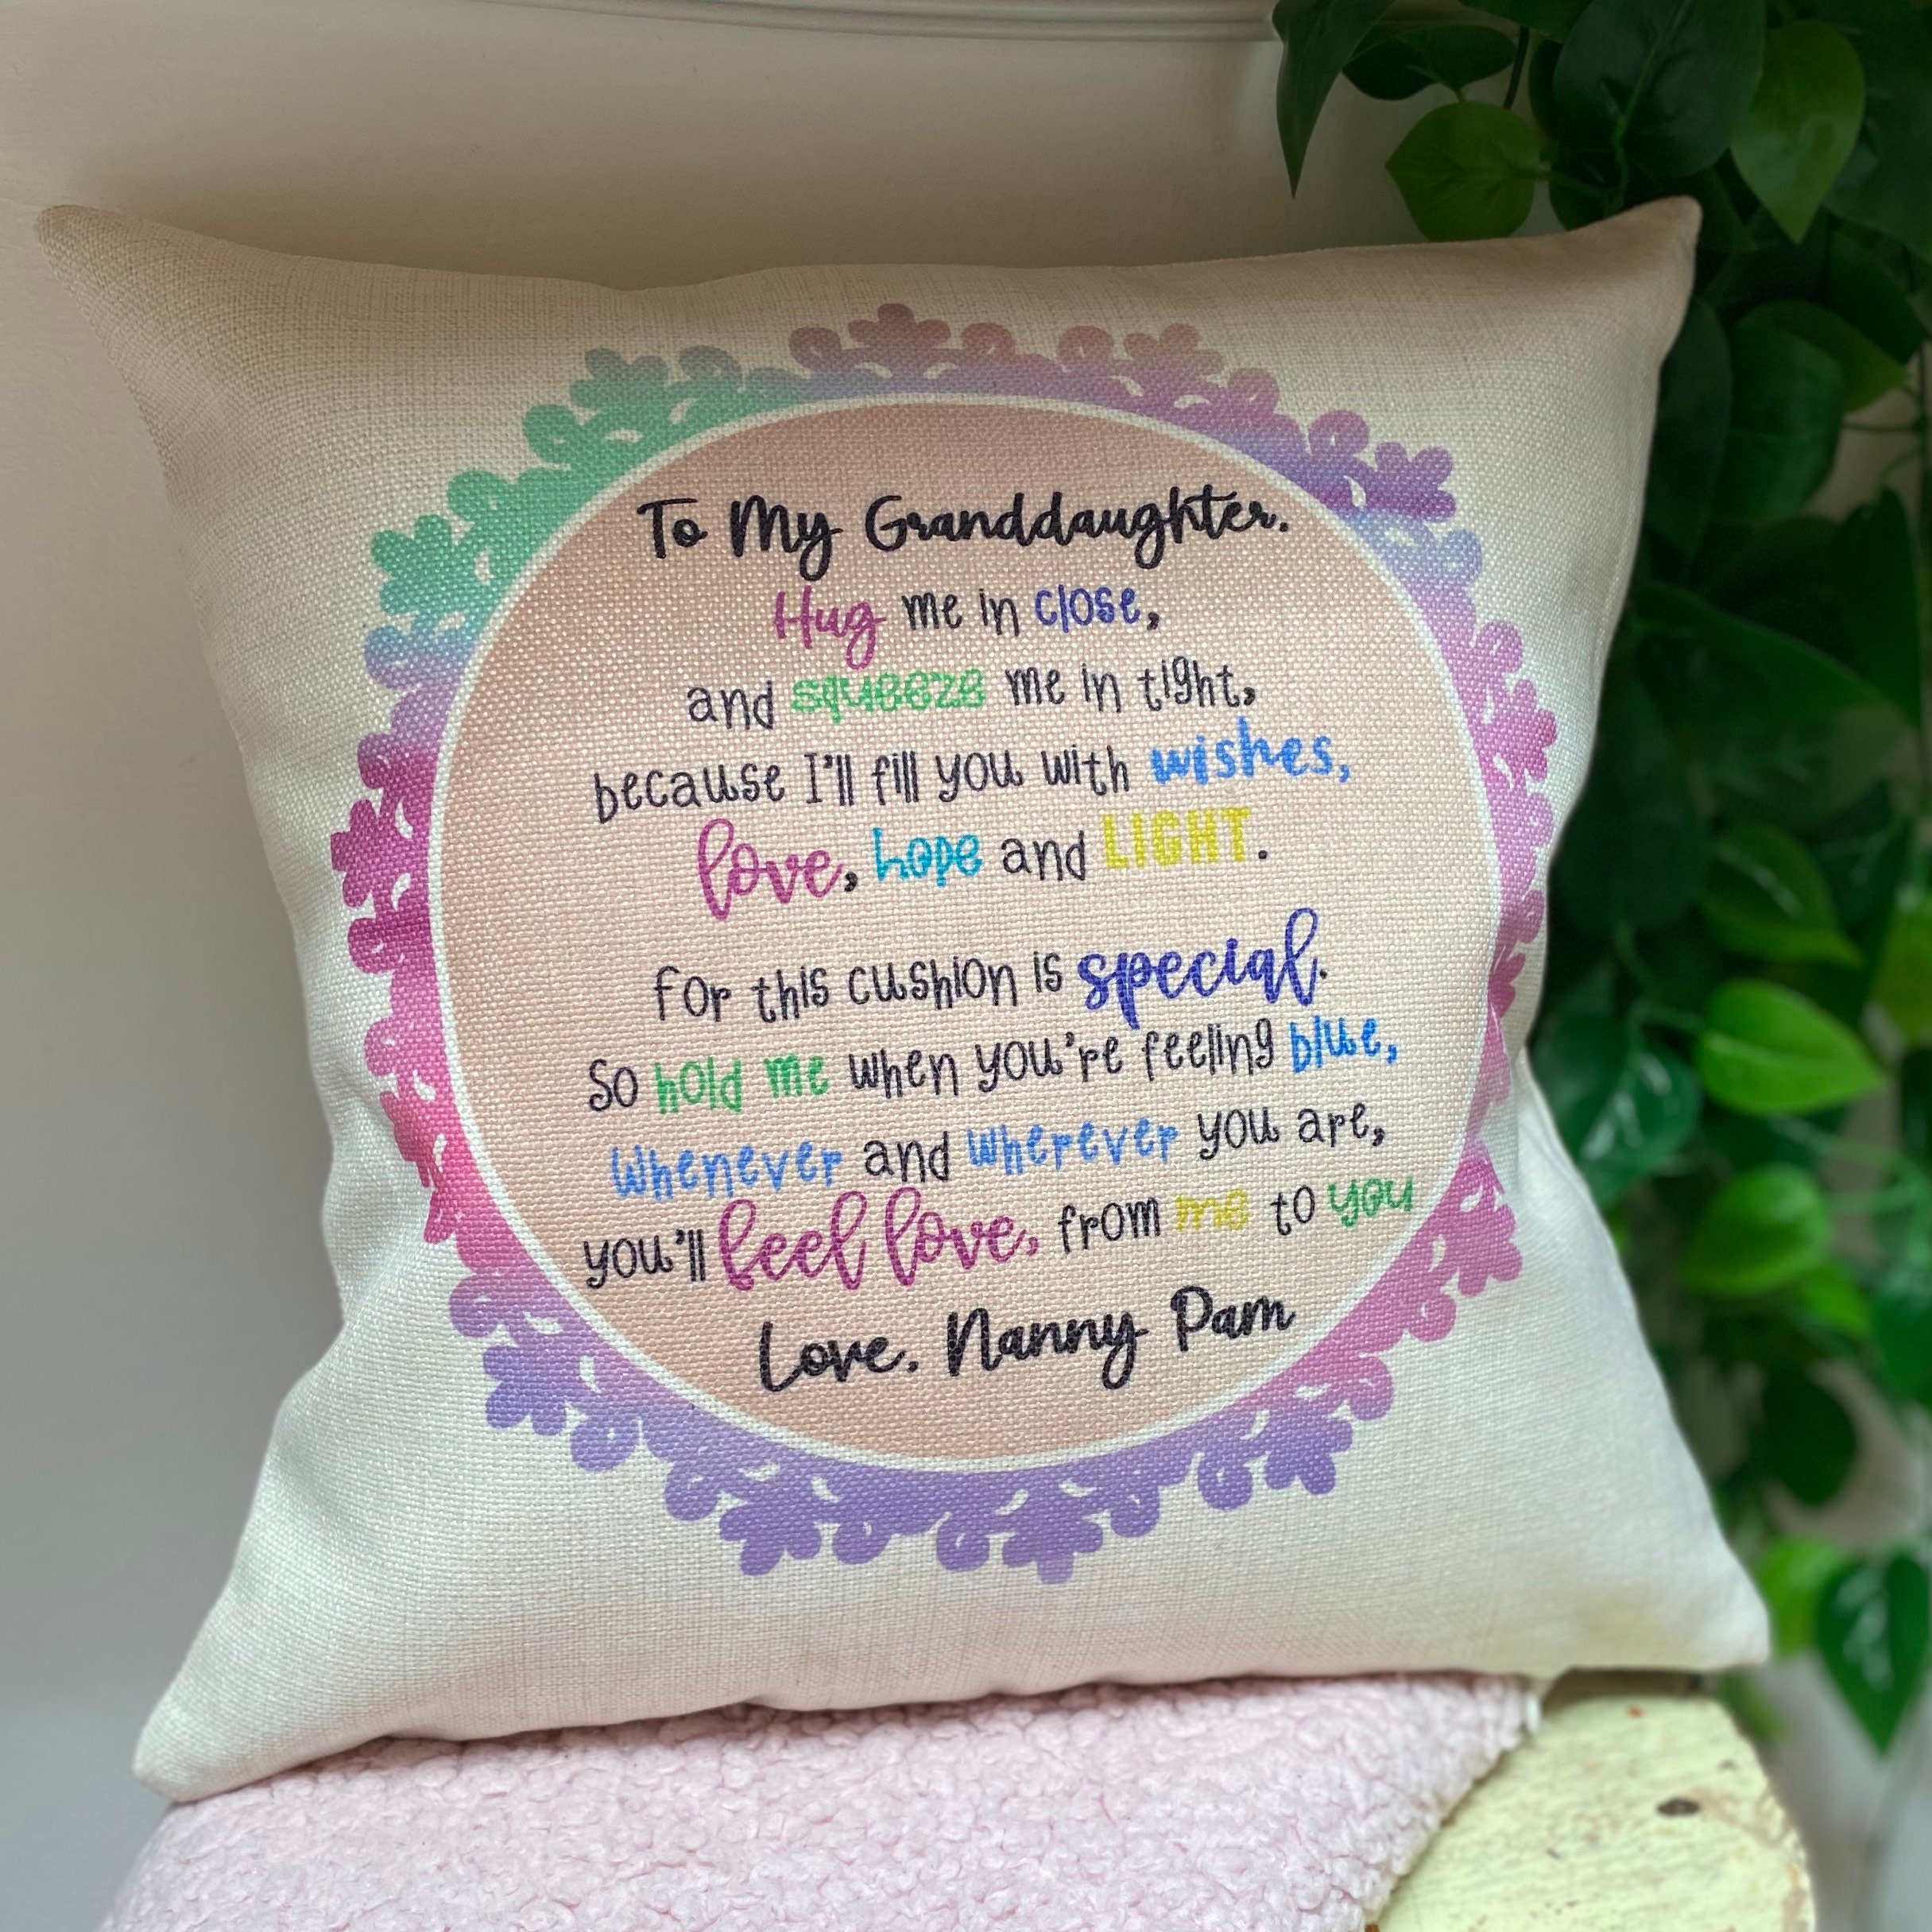 Cuddle Cushion with poem thinking of you gift | Etsy